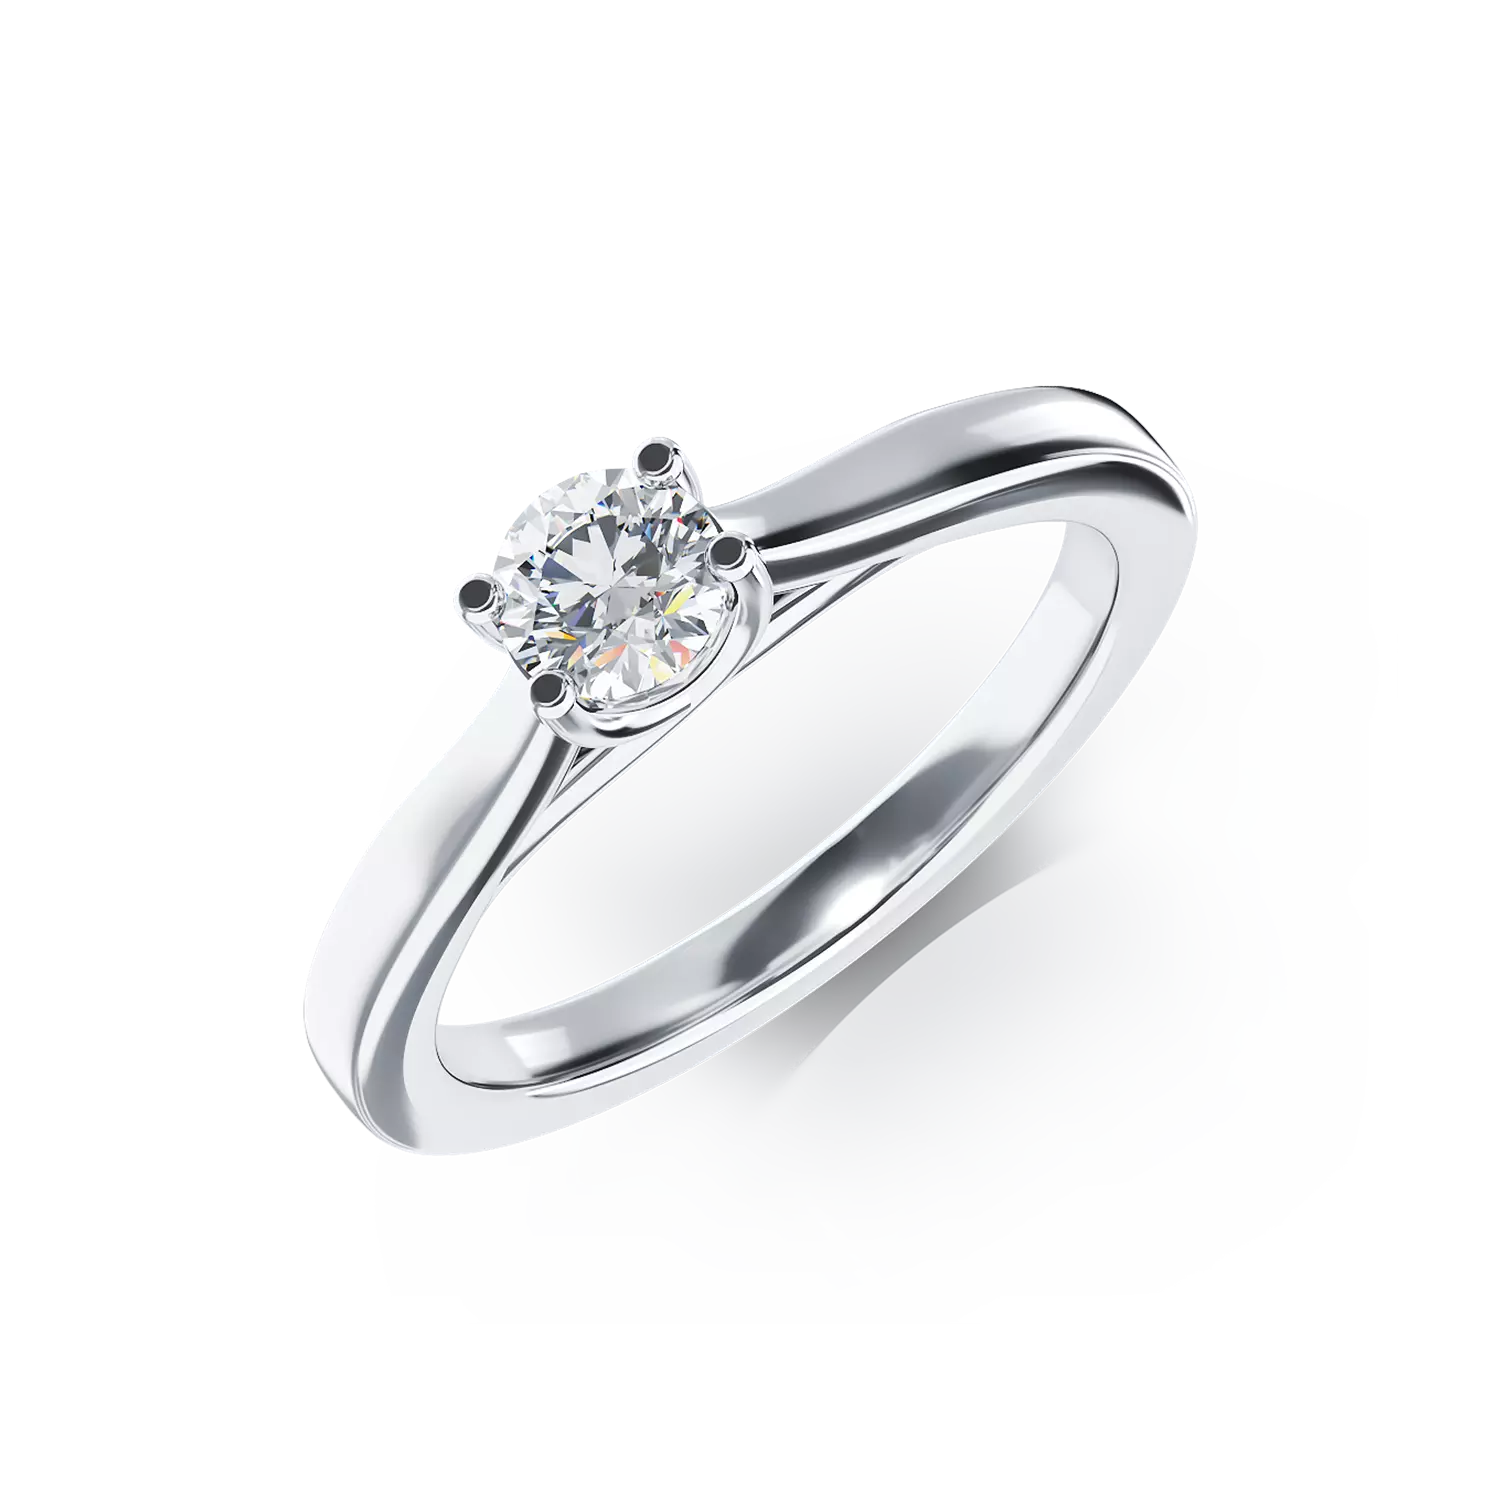 Eljegyzési gyűrű 18K-os fehér aranyból 0,26ct gyémánttal. Gramm: 3,06